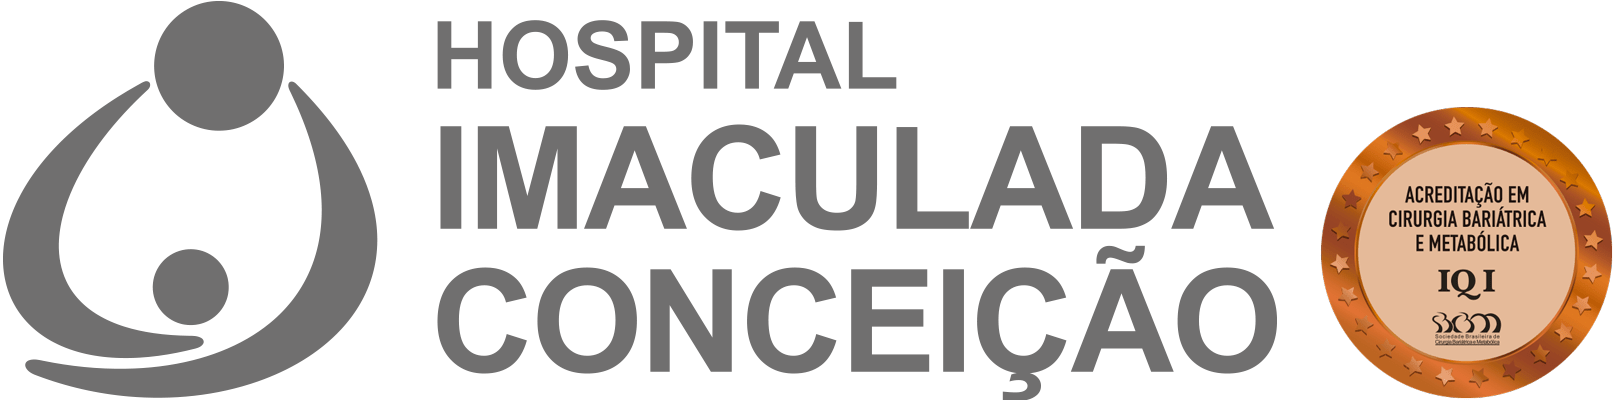 Hospital Imaculada Conceição